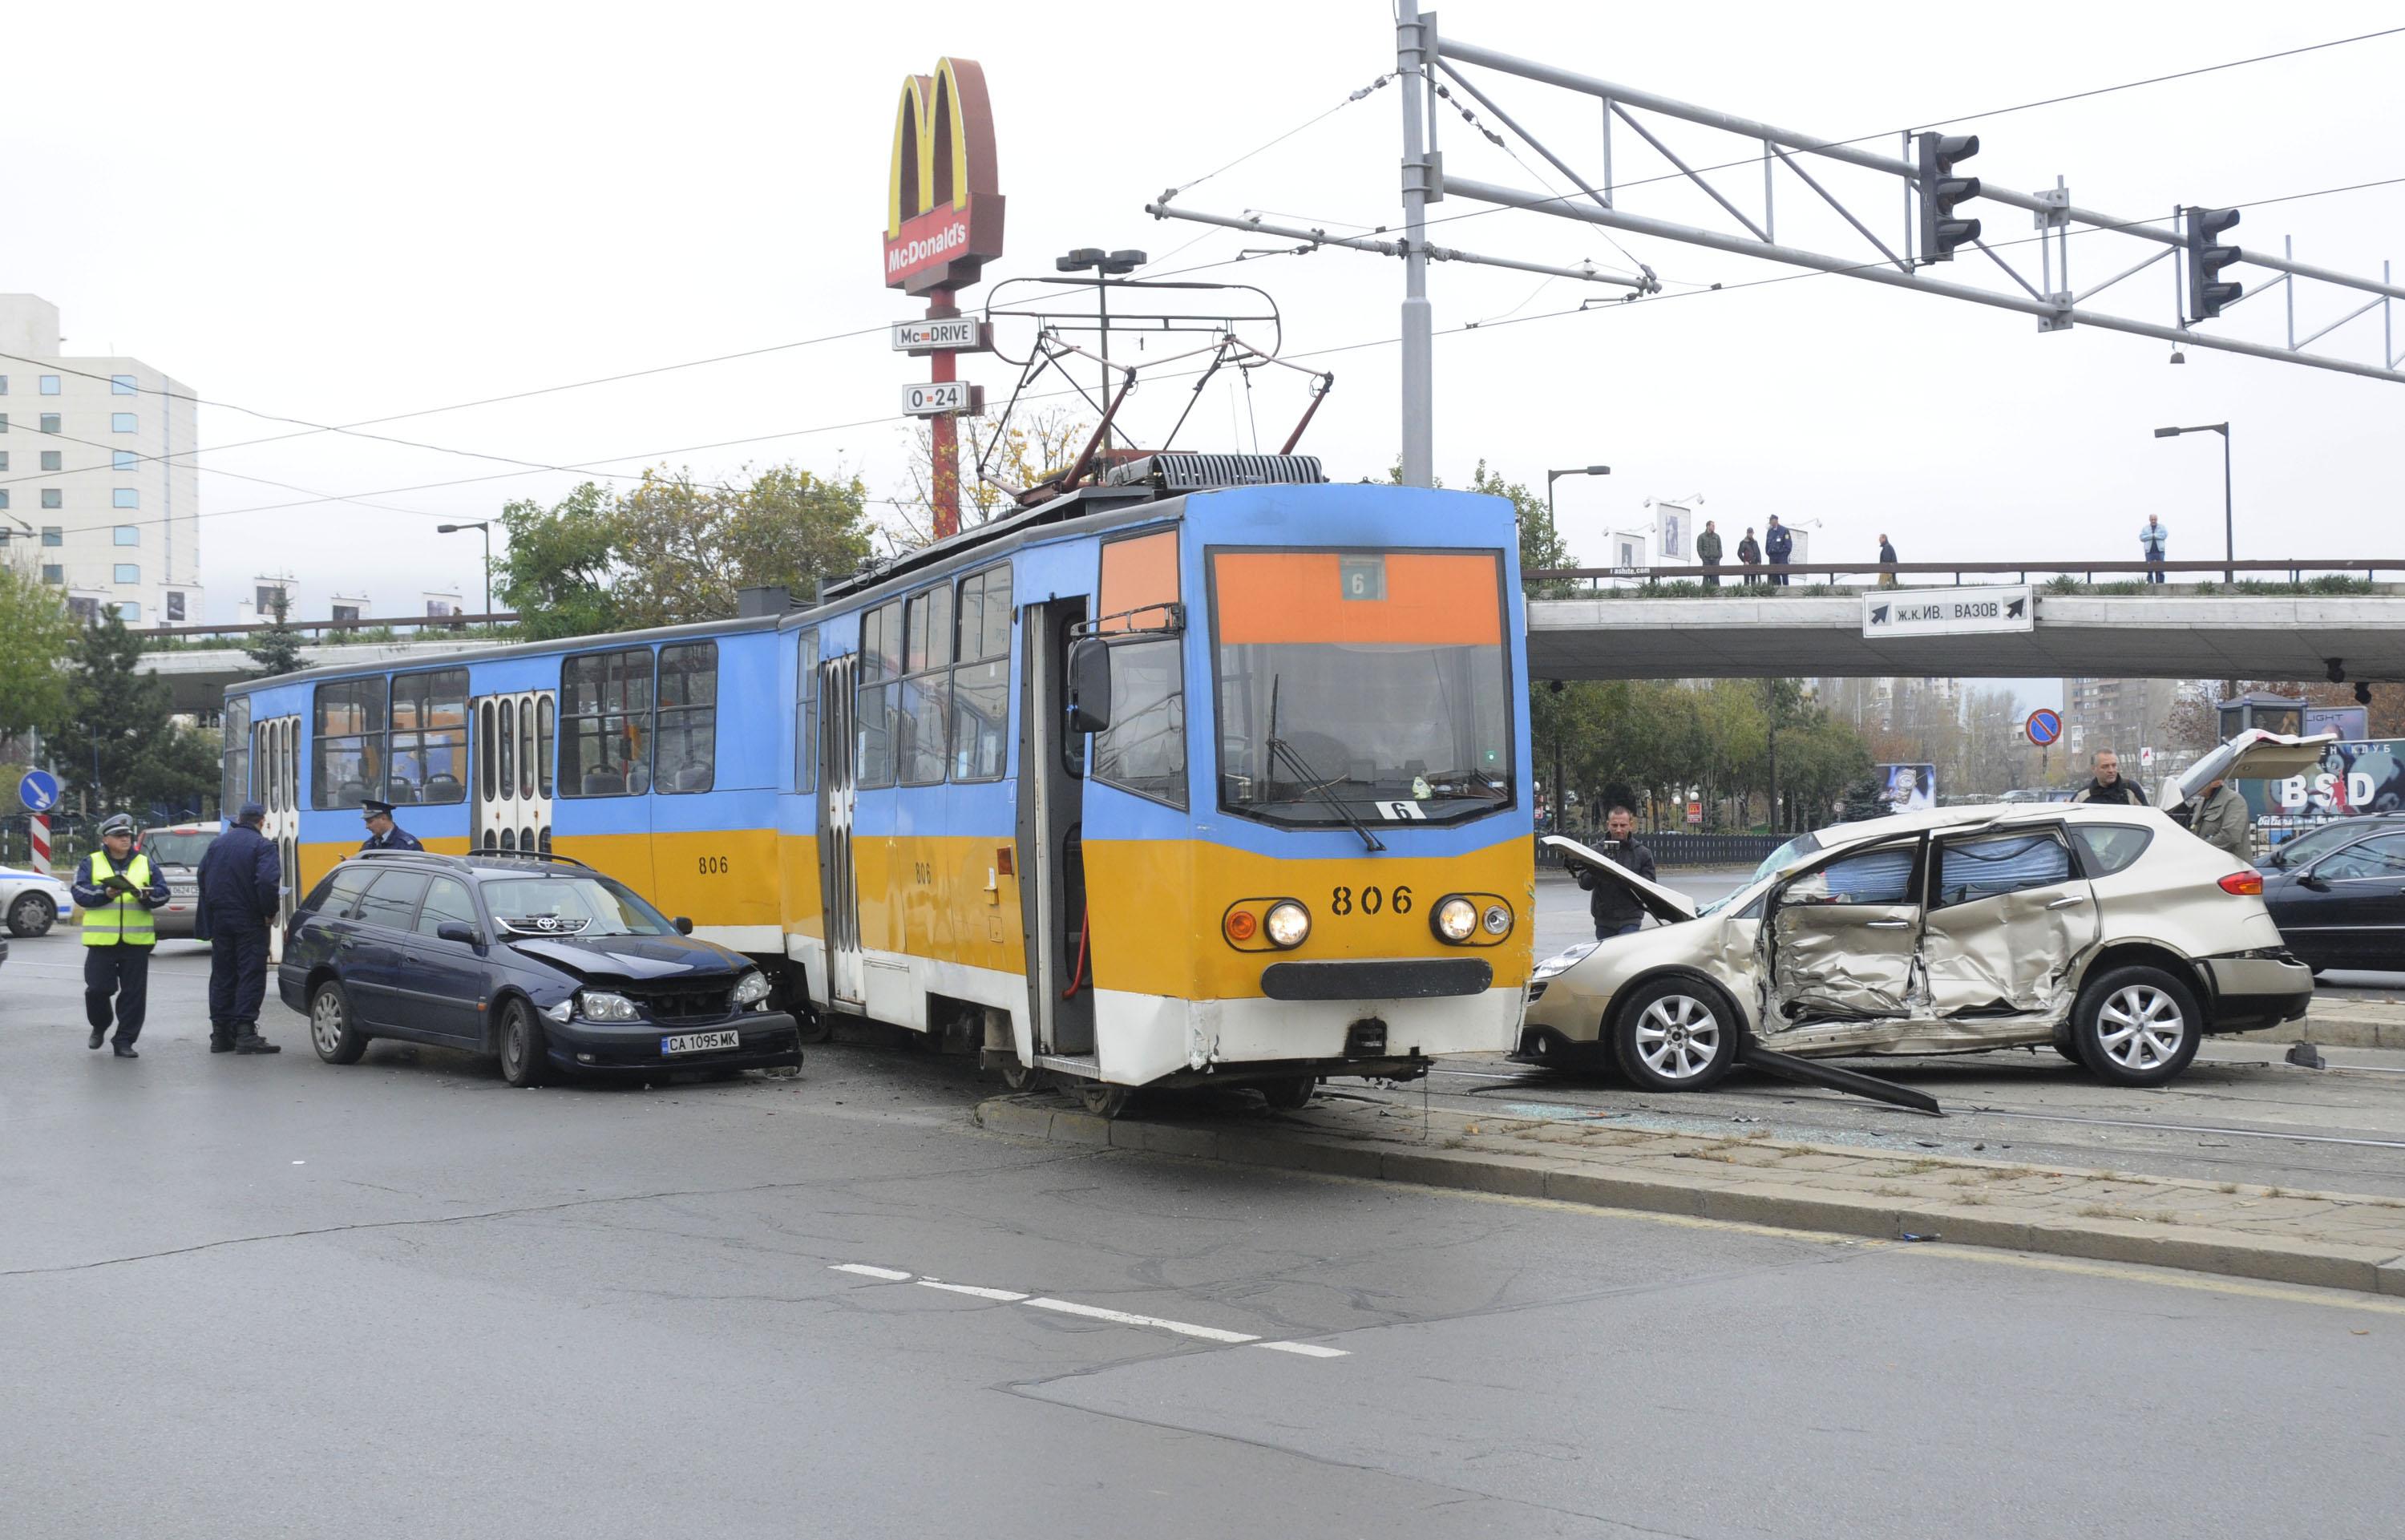 Първата катастрофа - няма пострадали сред пътниците в трамвая